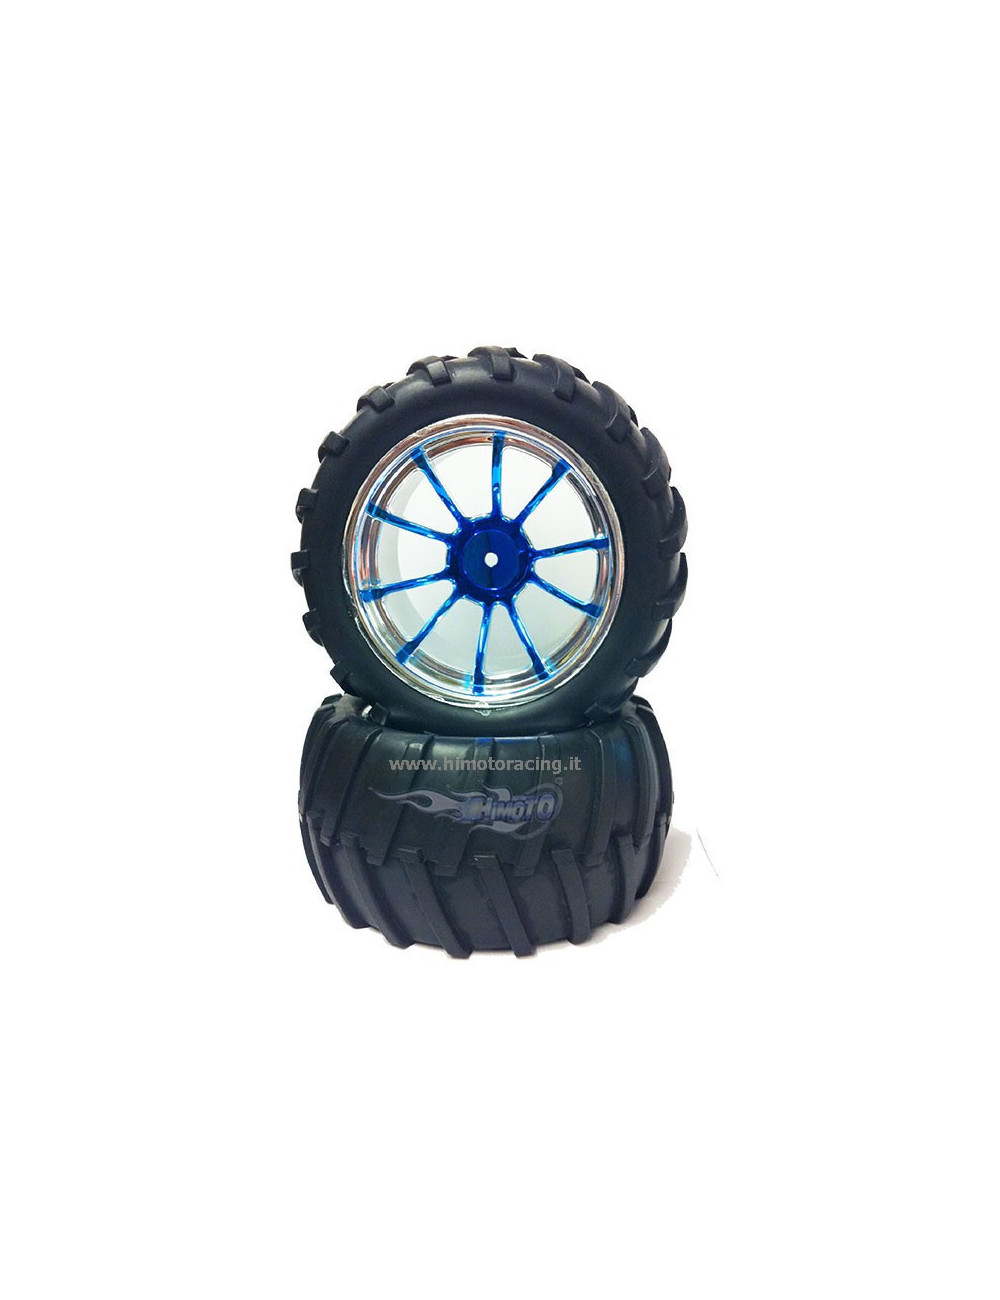 HIMOTO Coppia ruote complete cromate blu Himoto esagono 12mm